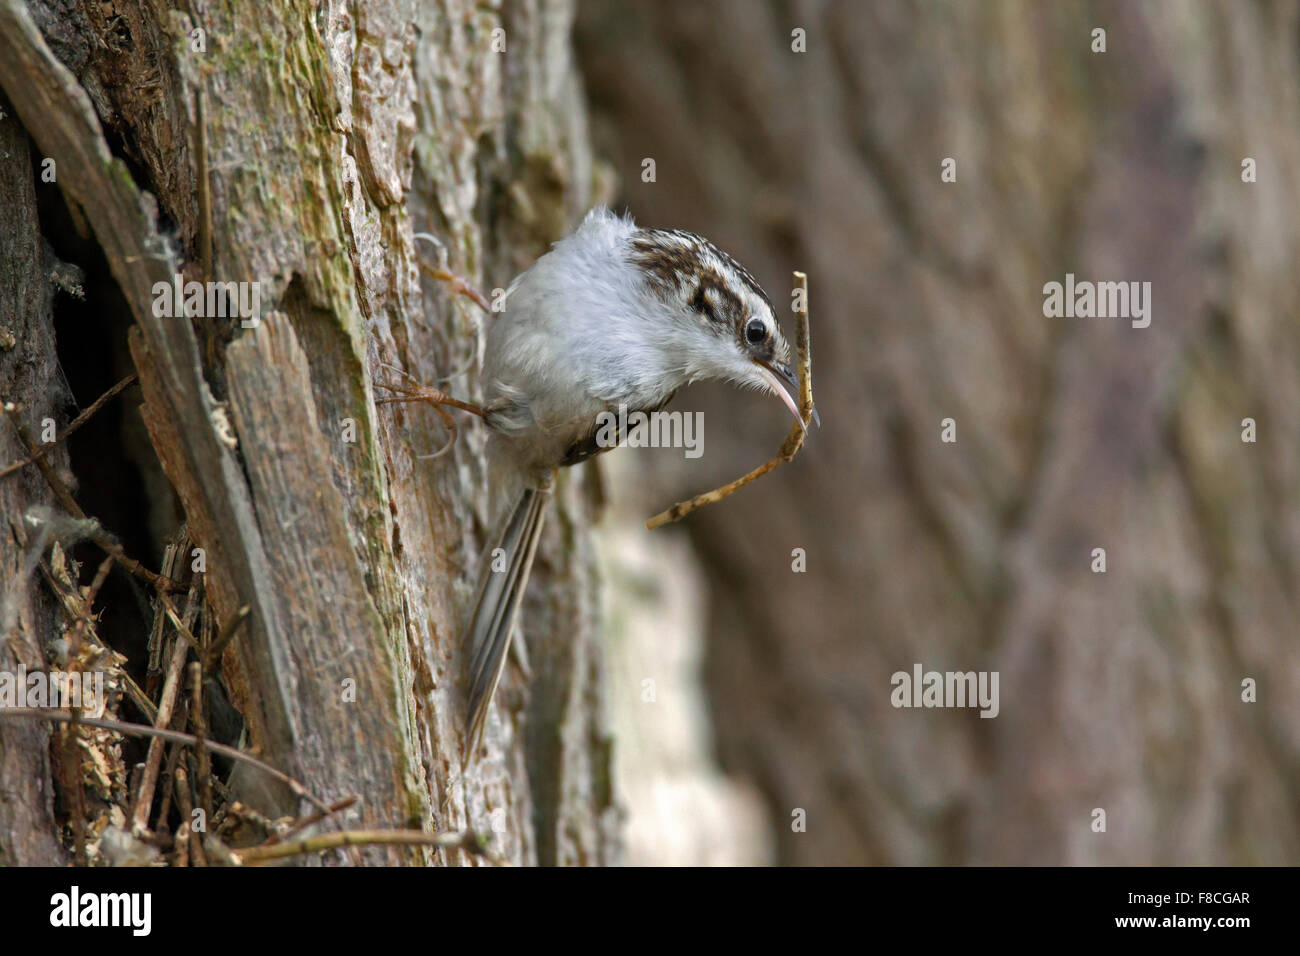 Eurasian rampichino alpestre / comune rampichino alpestre (Certhia familiaris) salendo tronco di albero con ramoscello come materiale di nidificazione nel becco Foto Stock